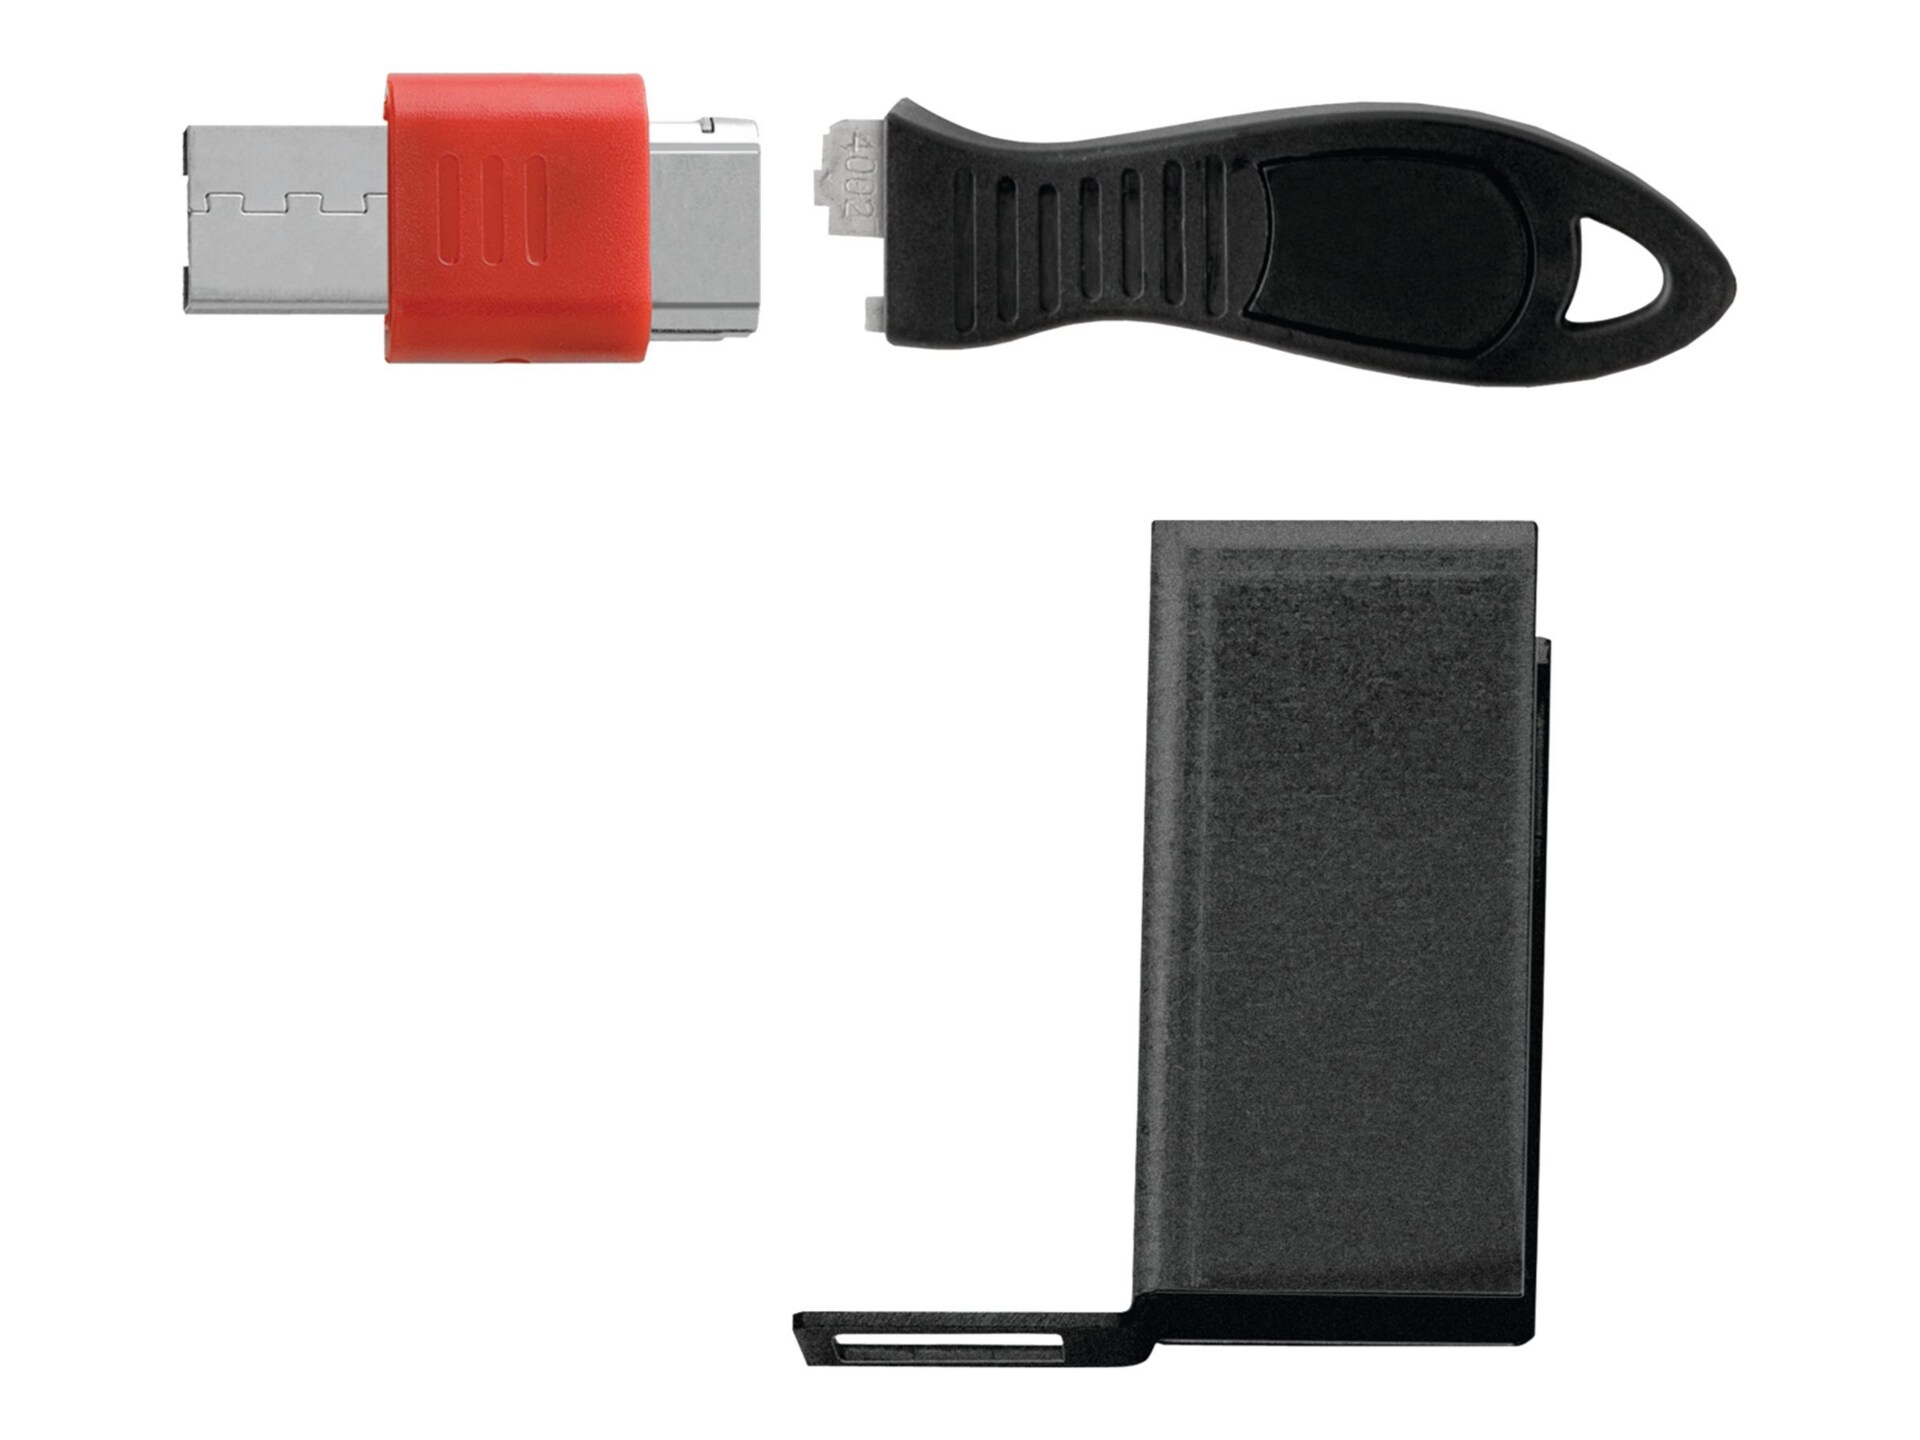 Kensington USB Port Lock with Cable Guard - Rectangular - Bloqueur de port USB